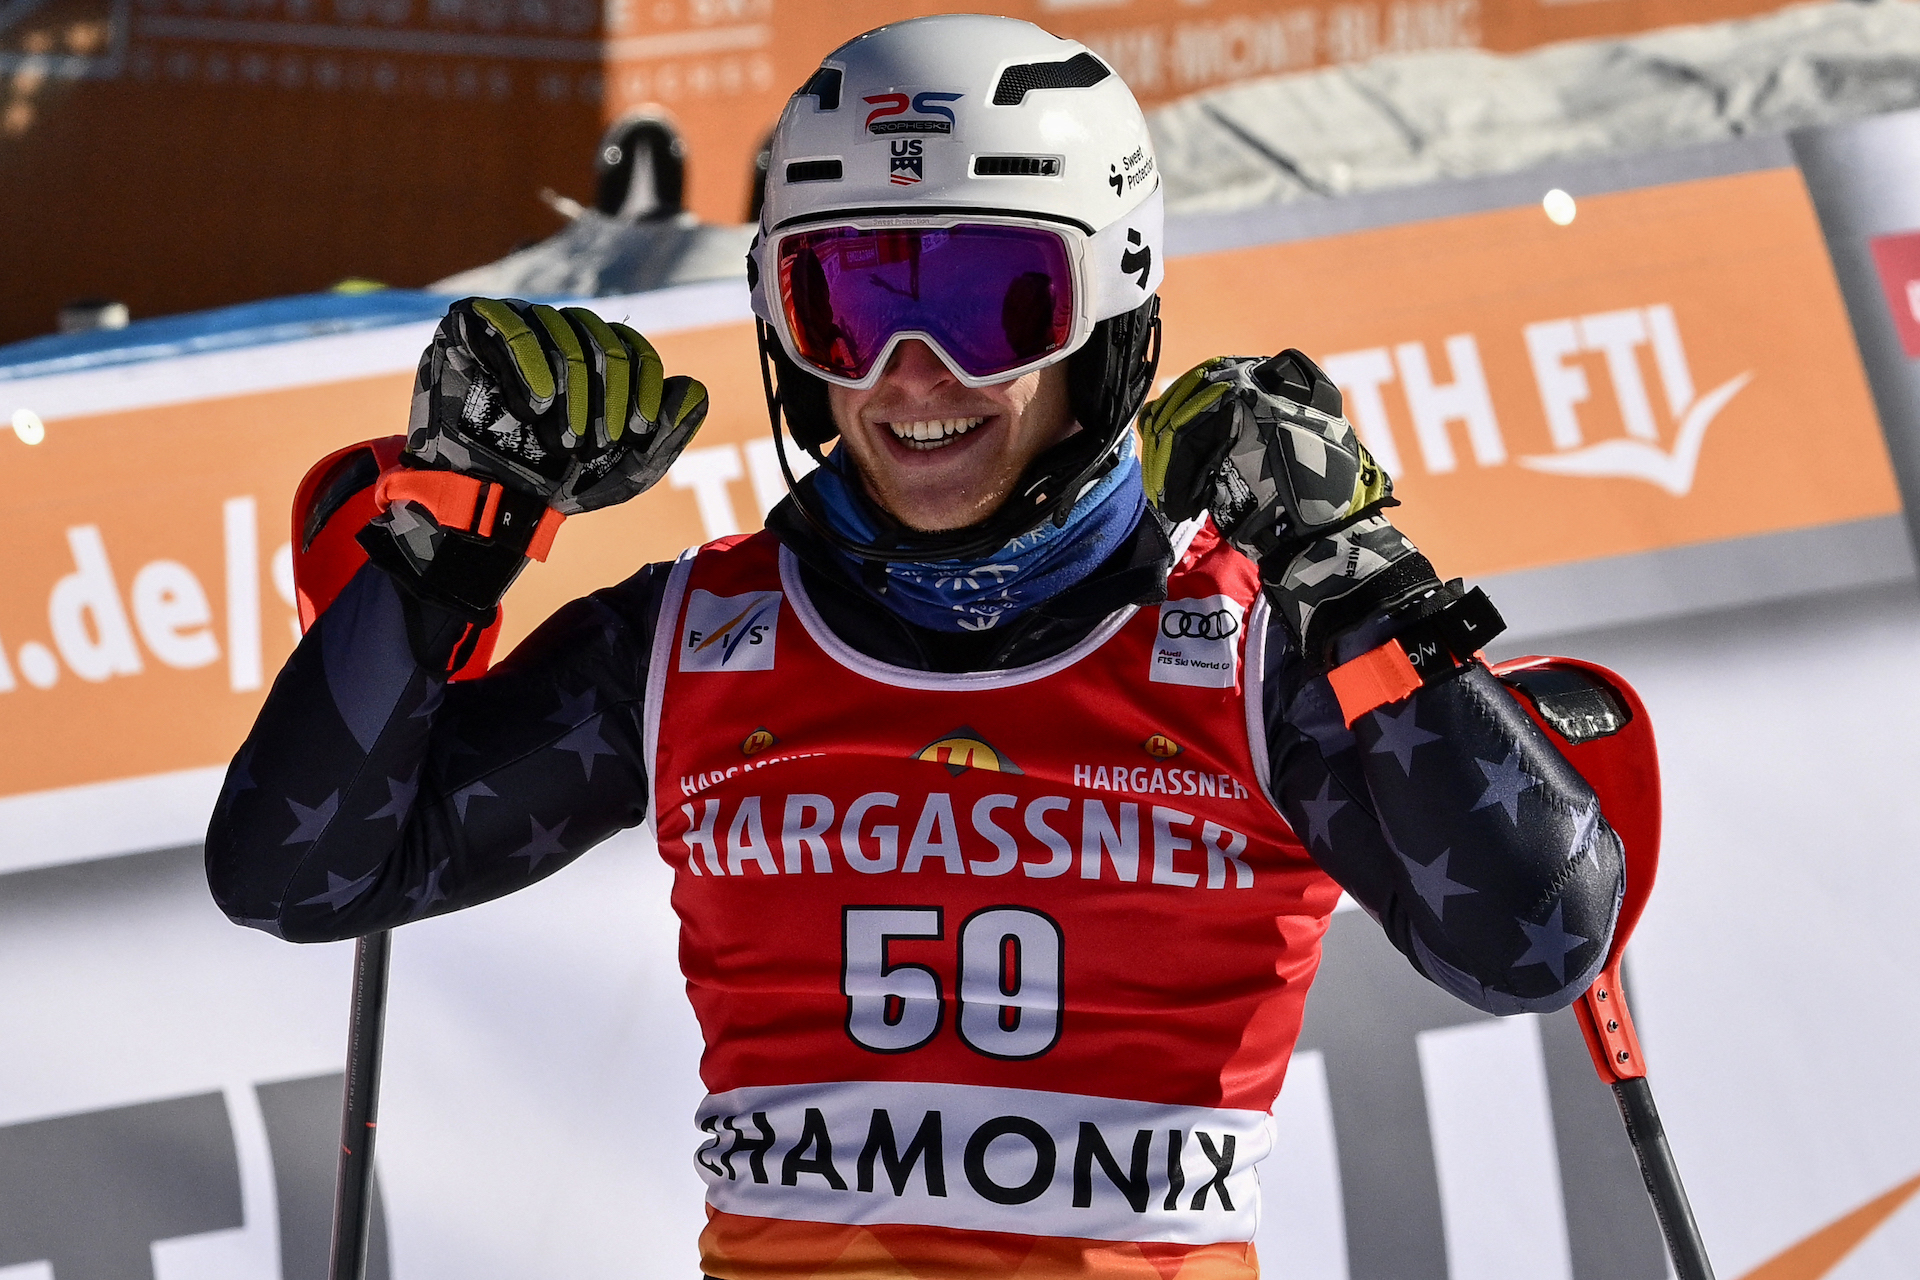 Two in Top 15 in Chamonix Slalom 